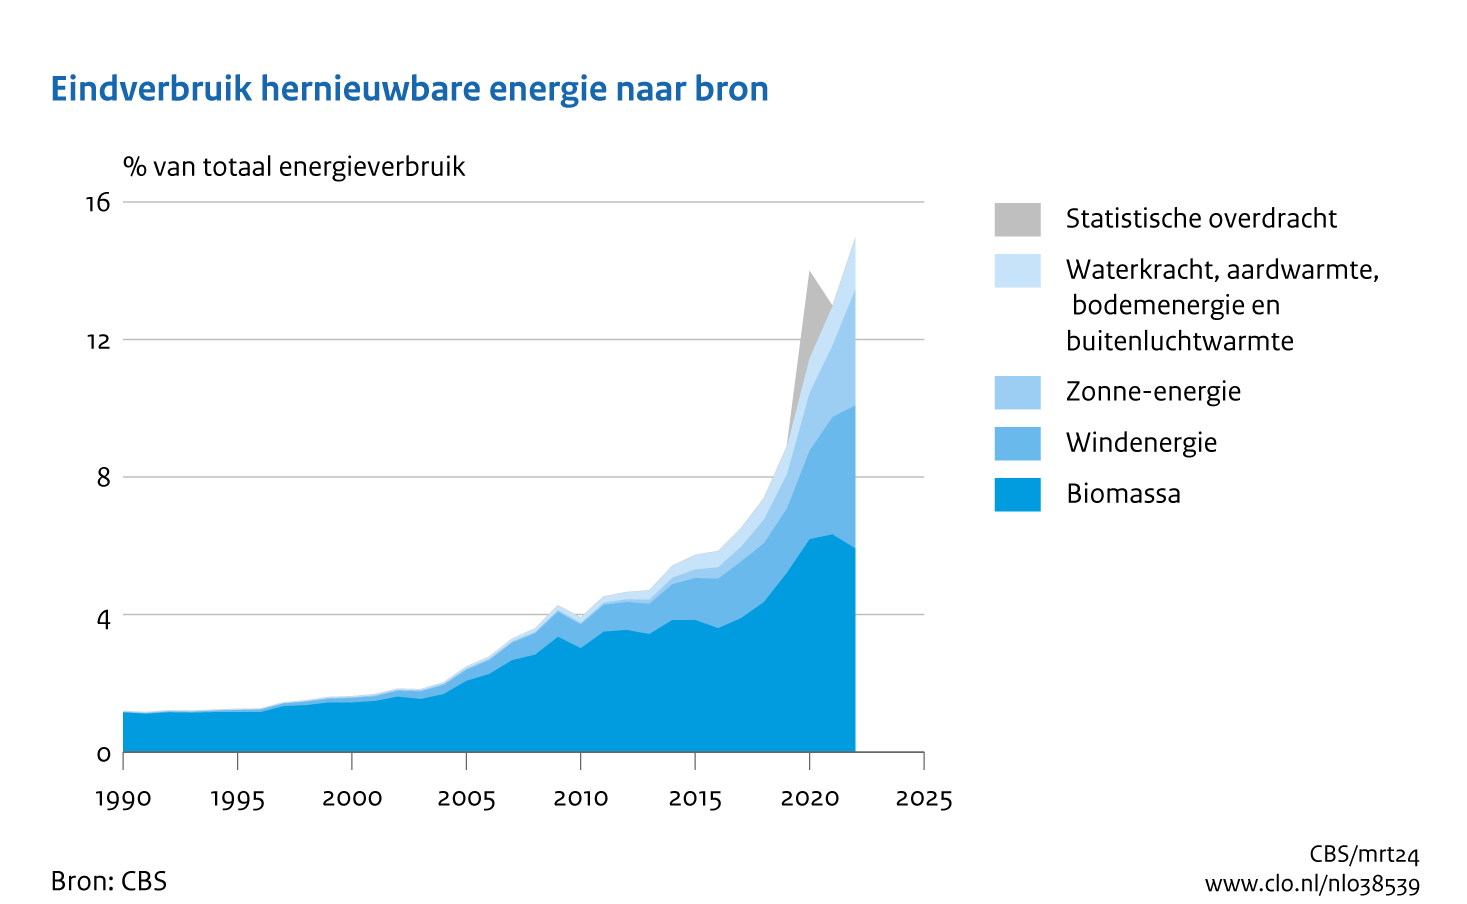 Vlakgrafiek met het eindverbruik van hernieuwbare energie naar energiebron als percentage van het totale energieverbruik van 1990 tot en met 2022. De grootste bron van hernieuwbare energie is biomassa, alhoewel het een afvlakking laat zien. Zon en wind laten een stijging zien.